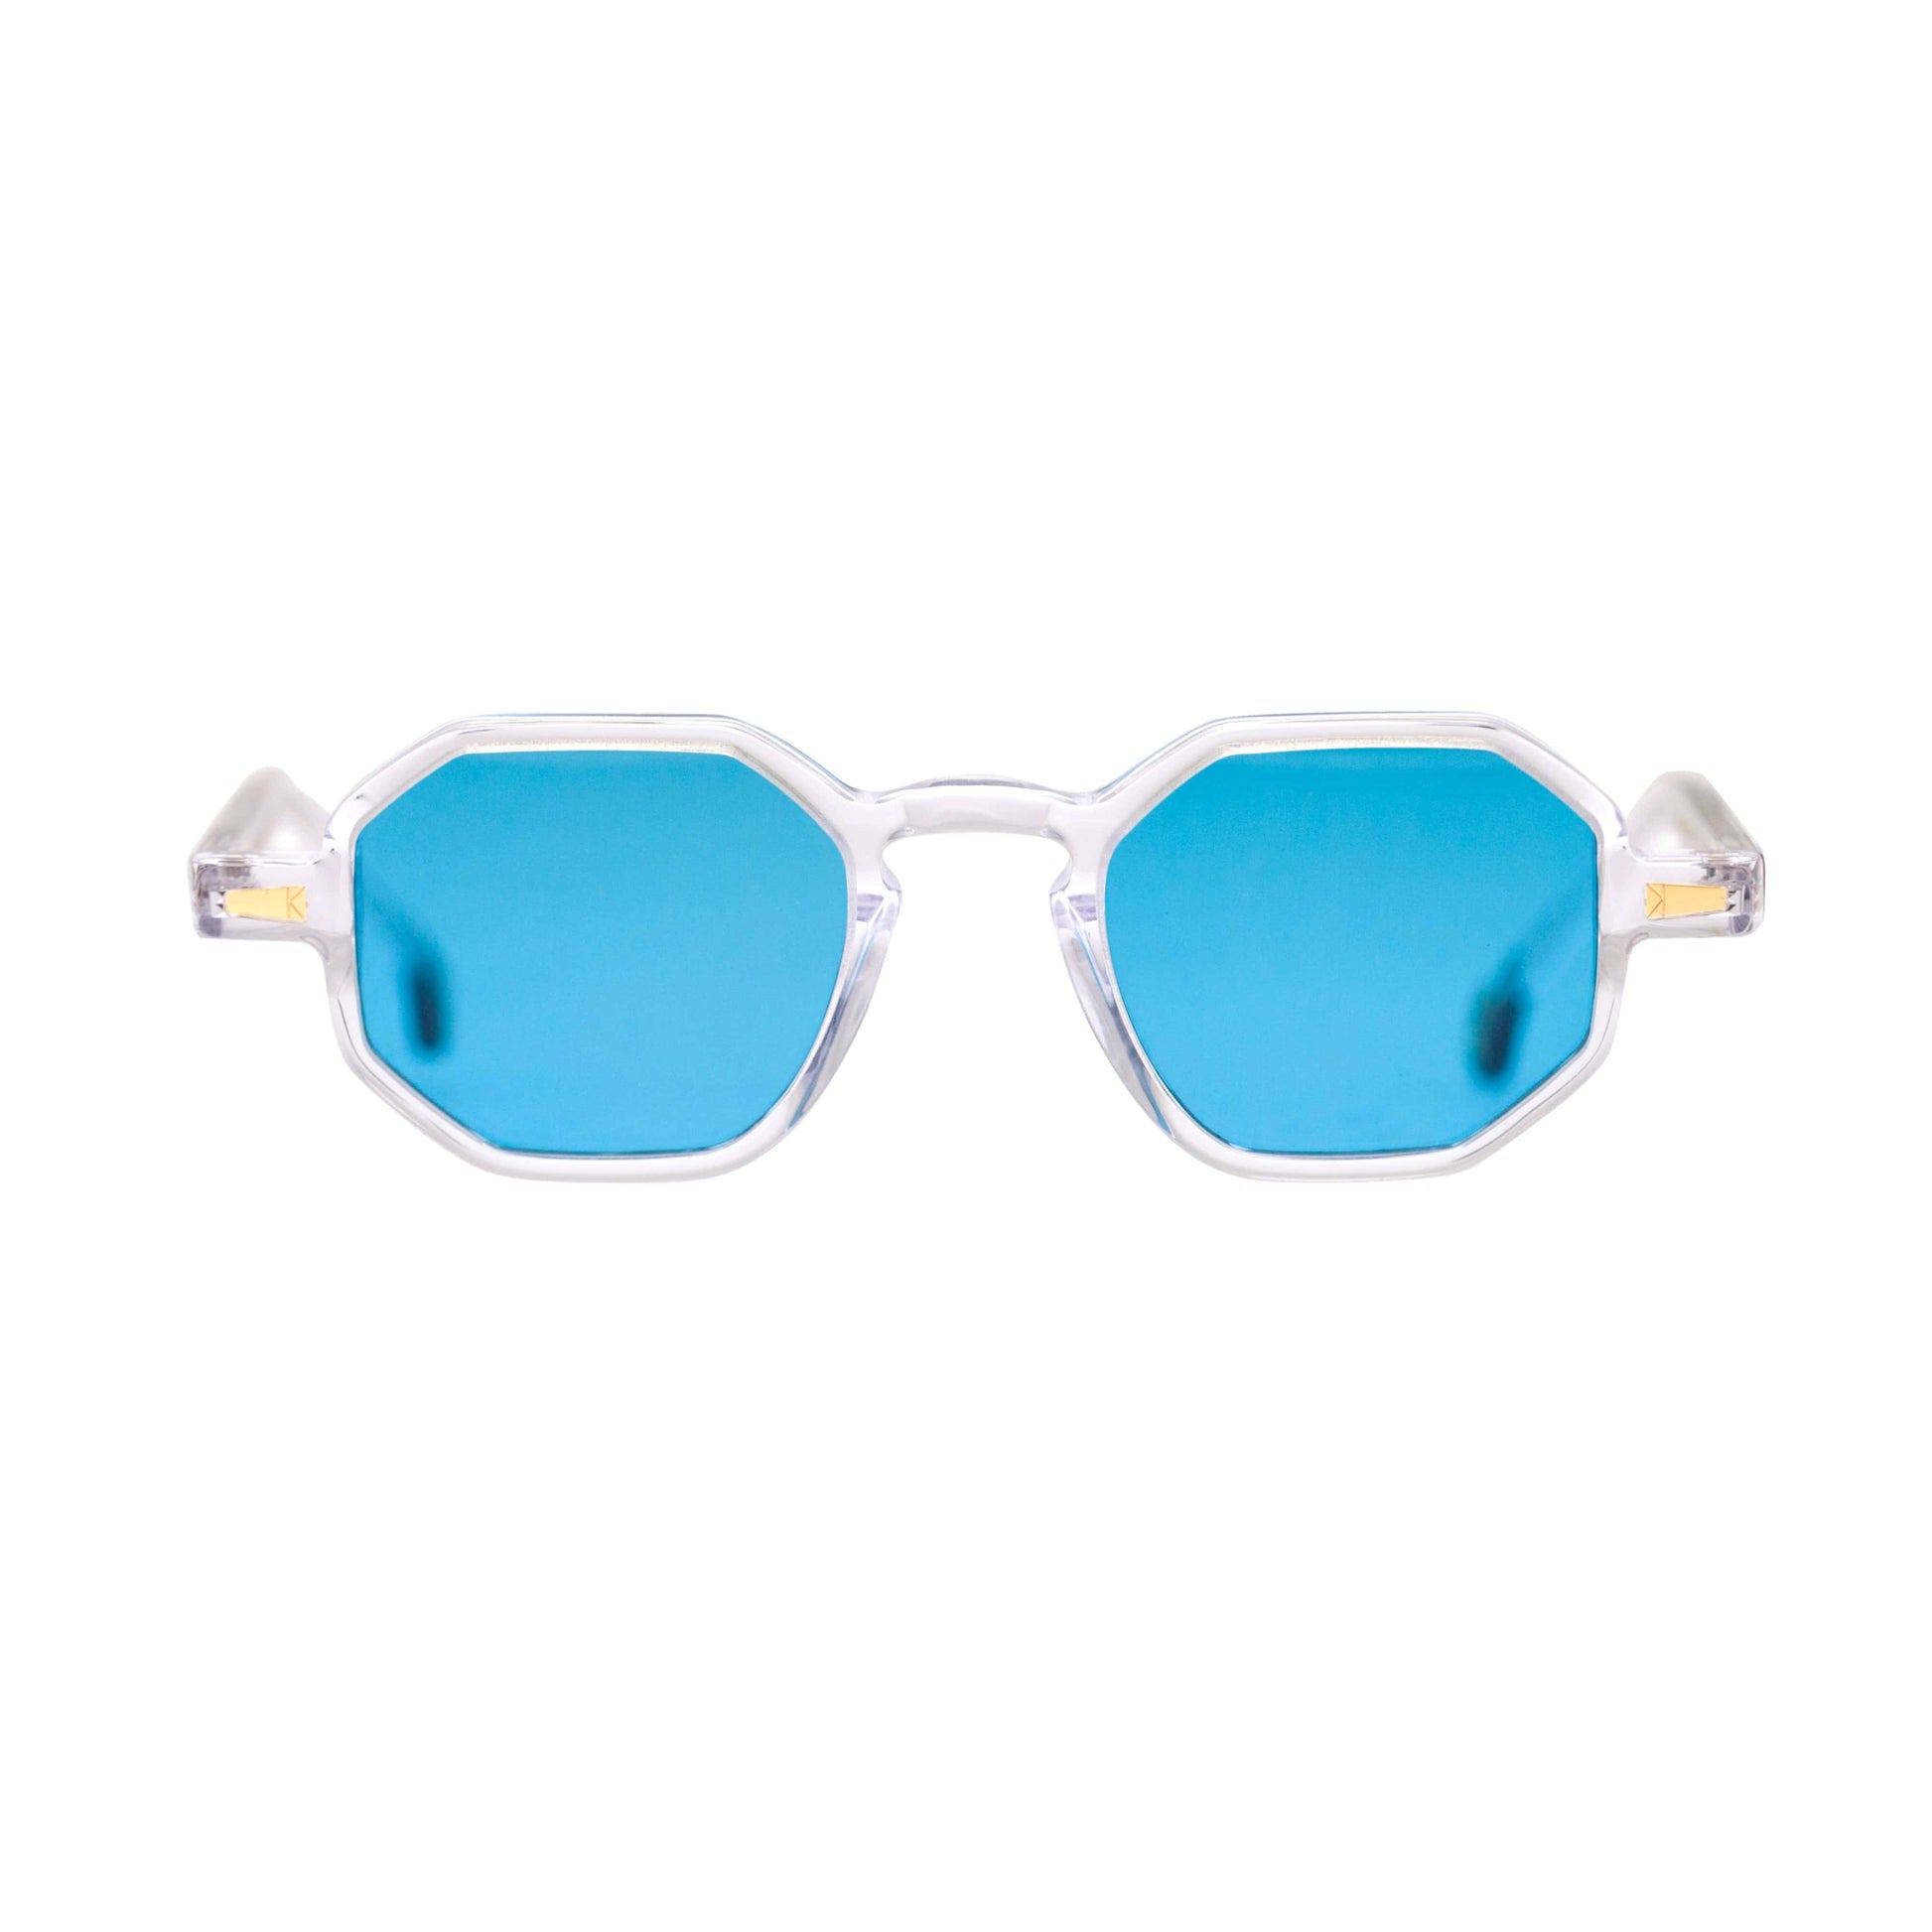 Kyme Occhiali da sole Ghiaccio - lente azzurra Kyme Rio: occhiale da sole poligonale made in Italy